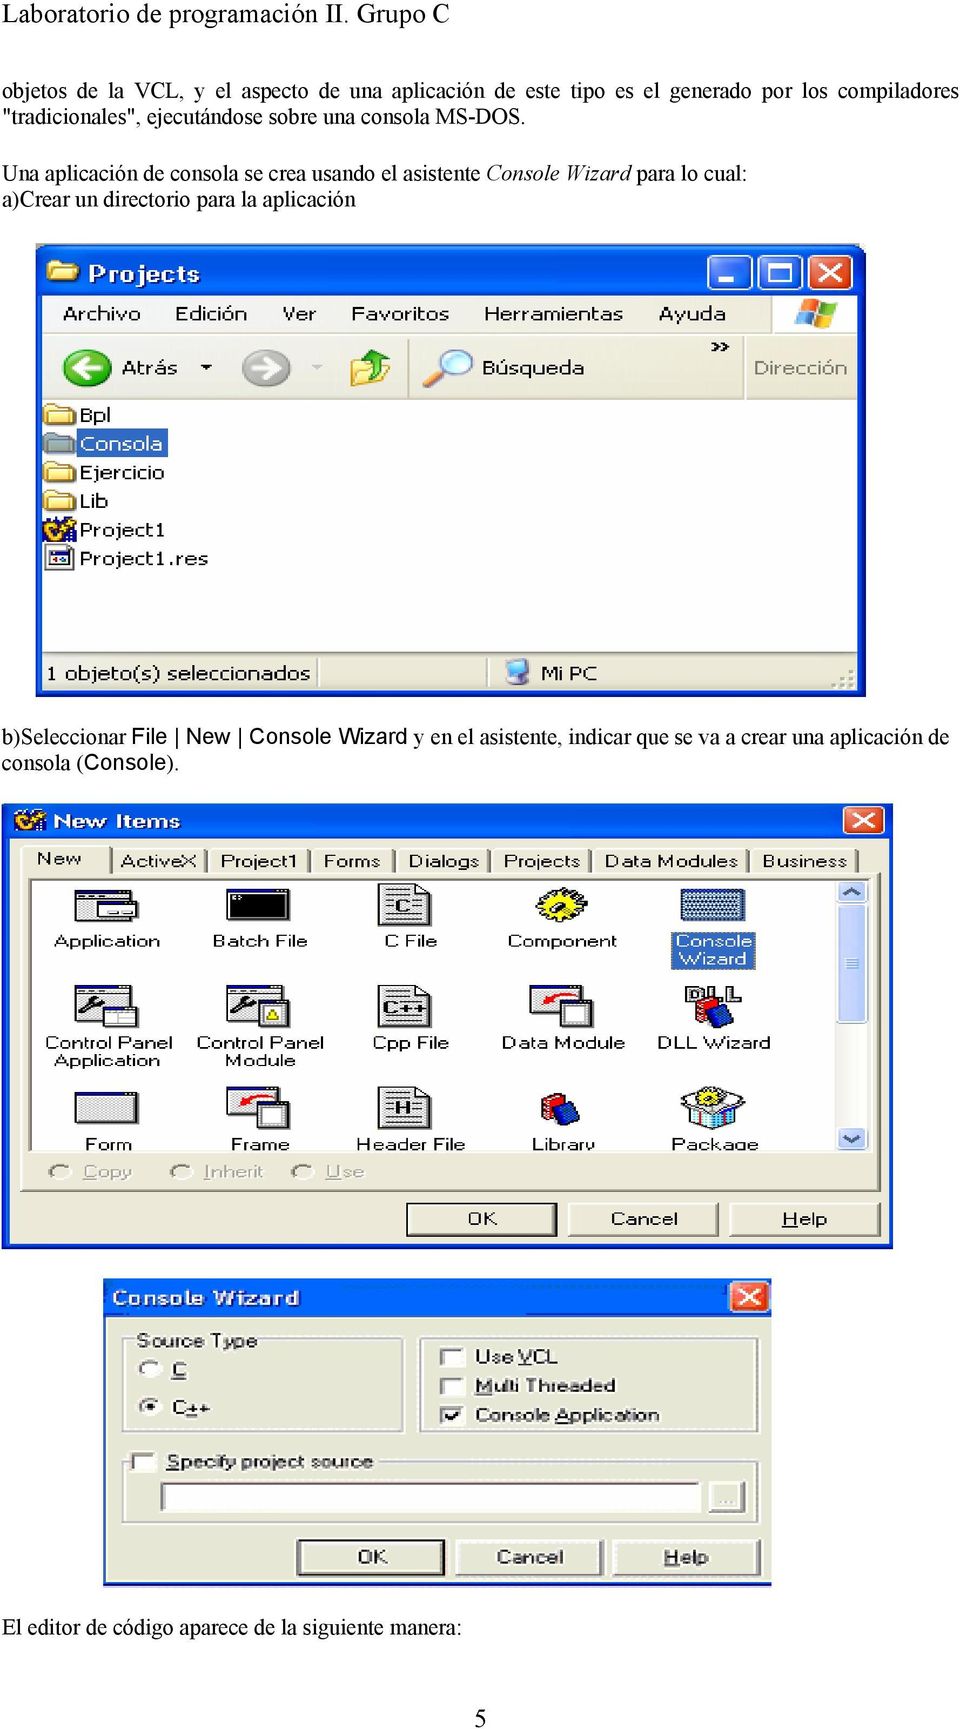 Una aplicación de consola se crea usando el asistente Console Wizard para lo cual: a)crear un directorio para la